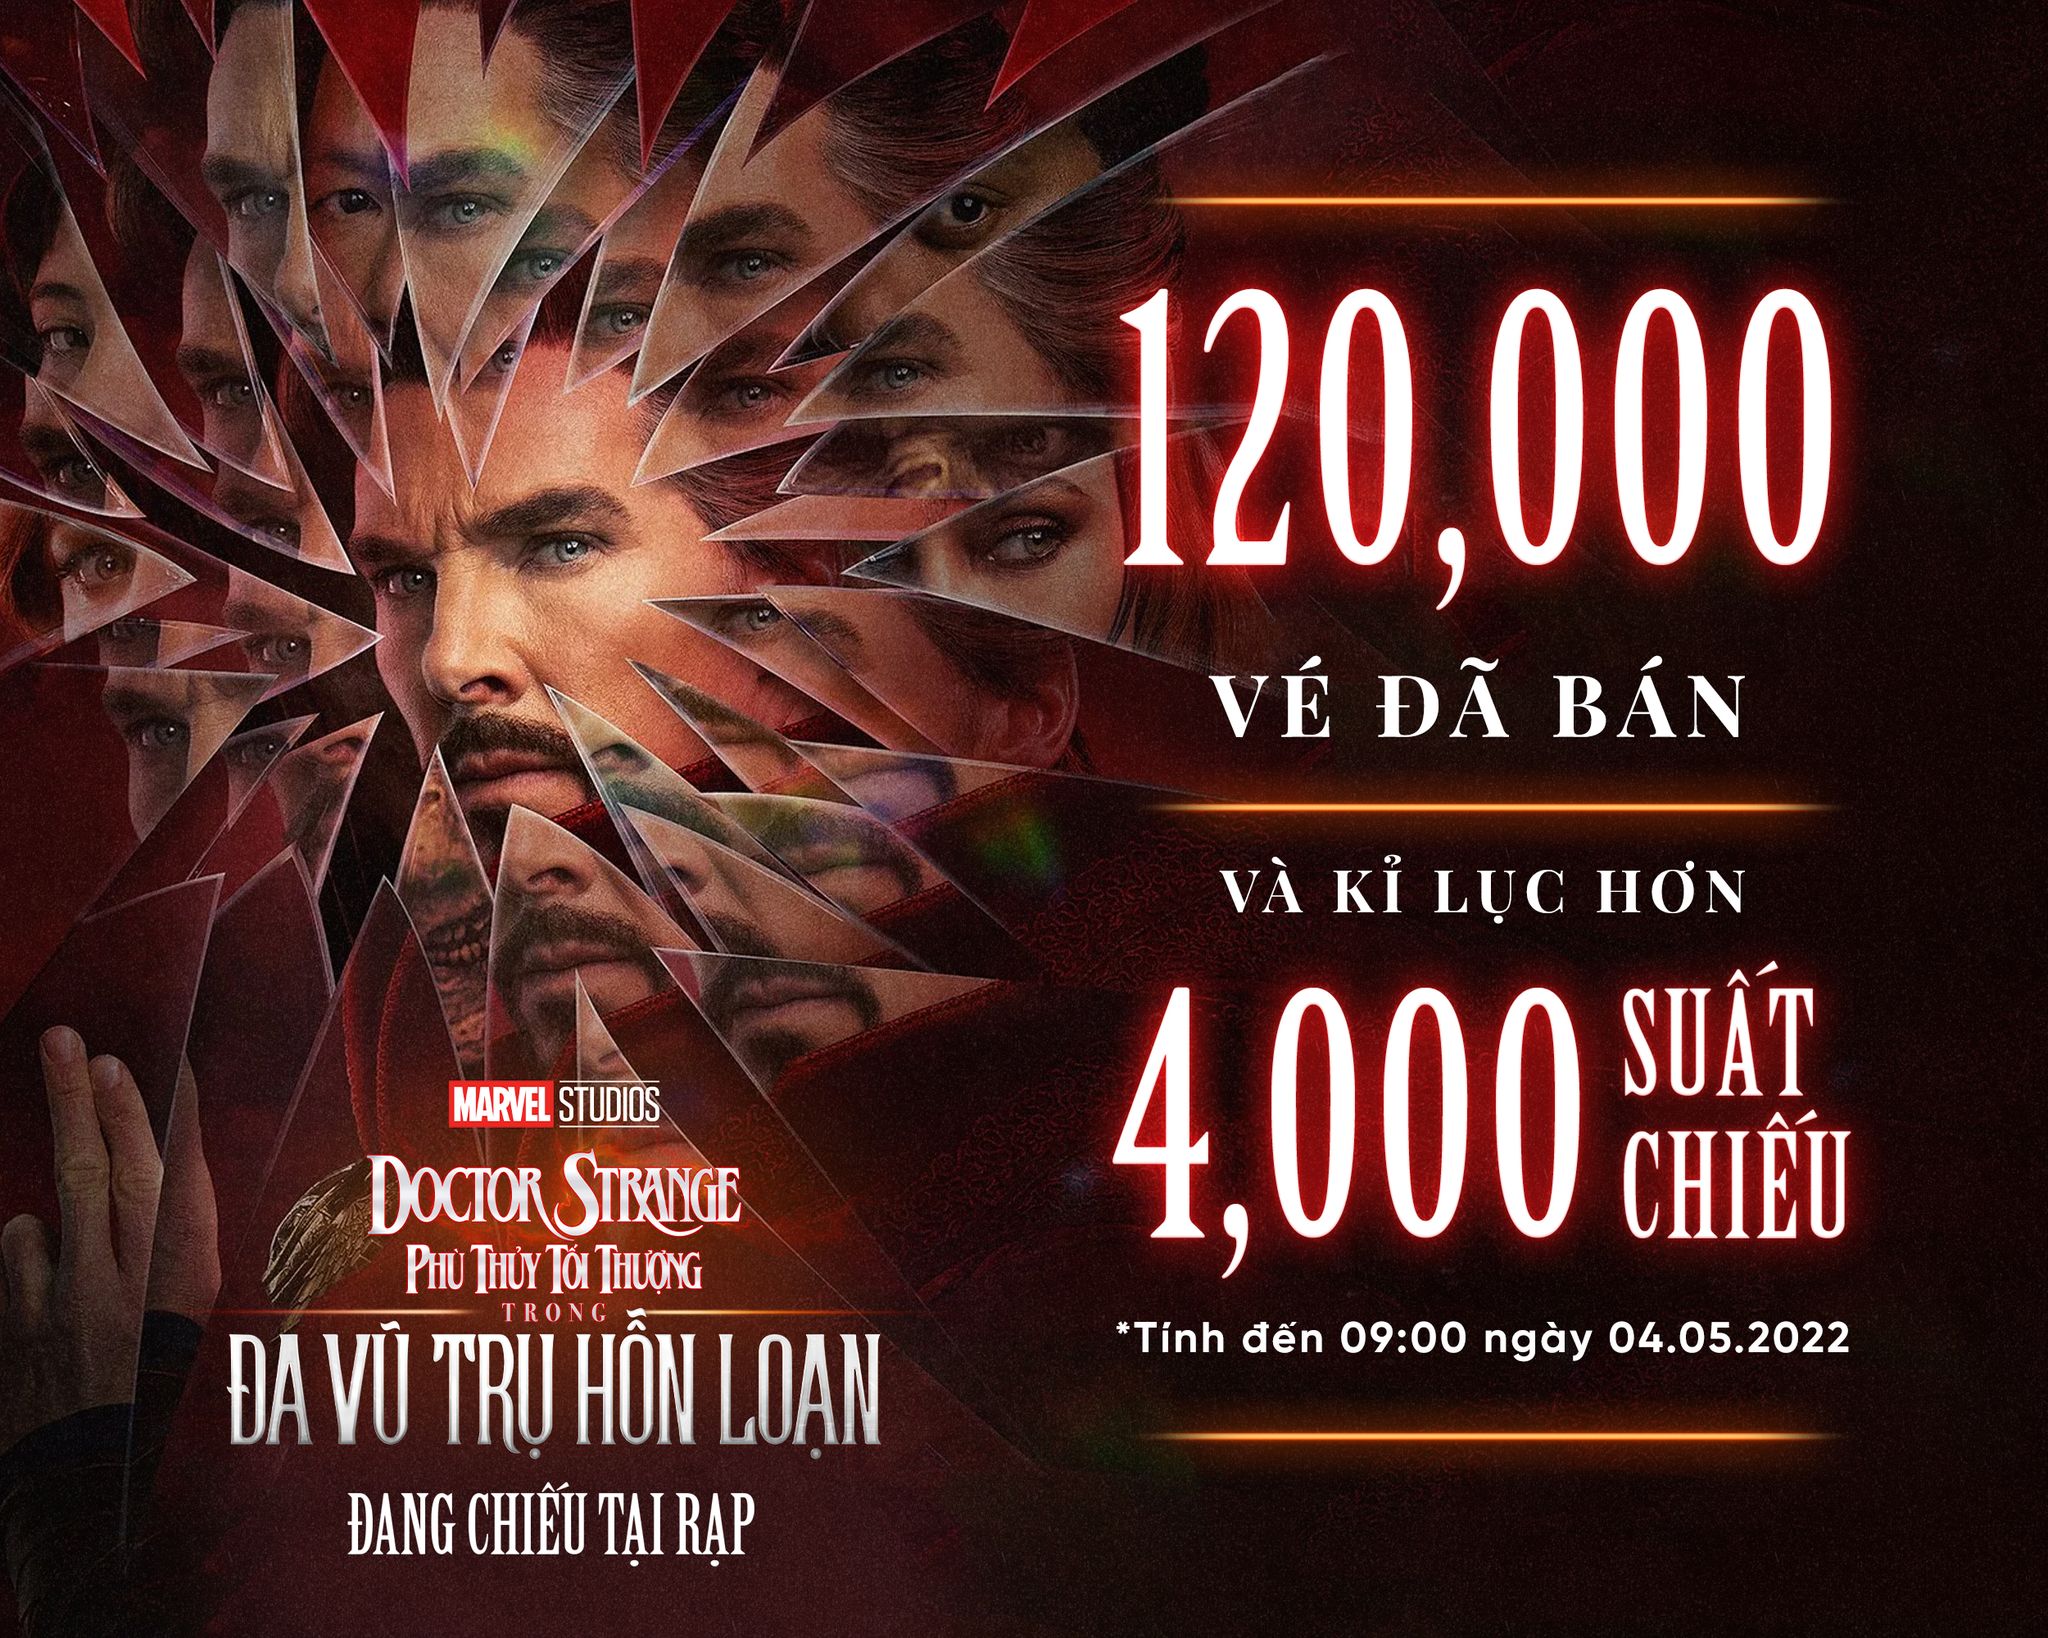 Bom tấn Doctor Strange 2 cán mốc 20 tỷ, lập kỷ lục doanh thu tại Việt Nam - ảnh 1